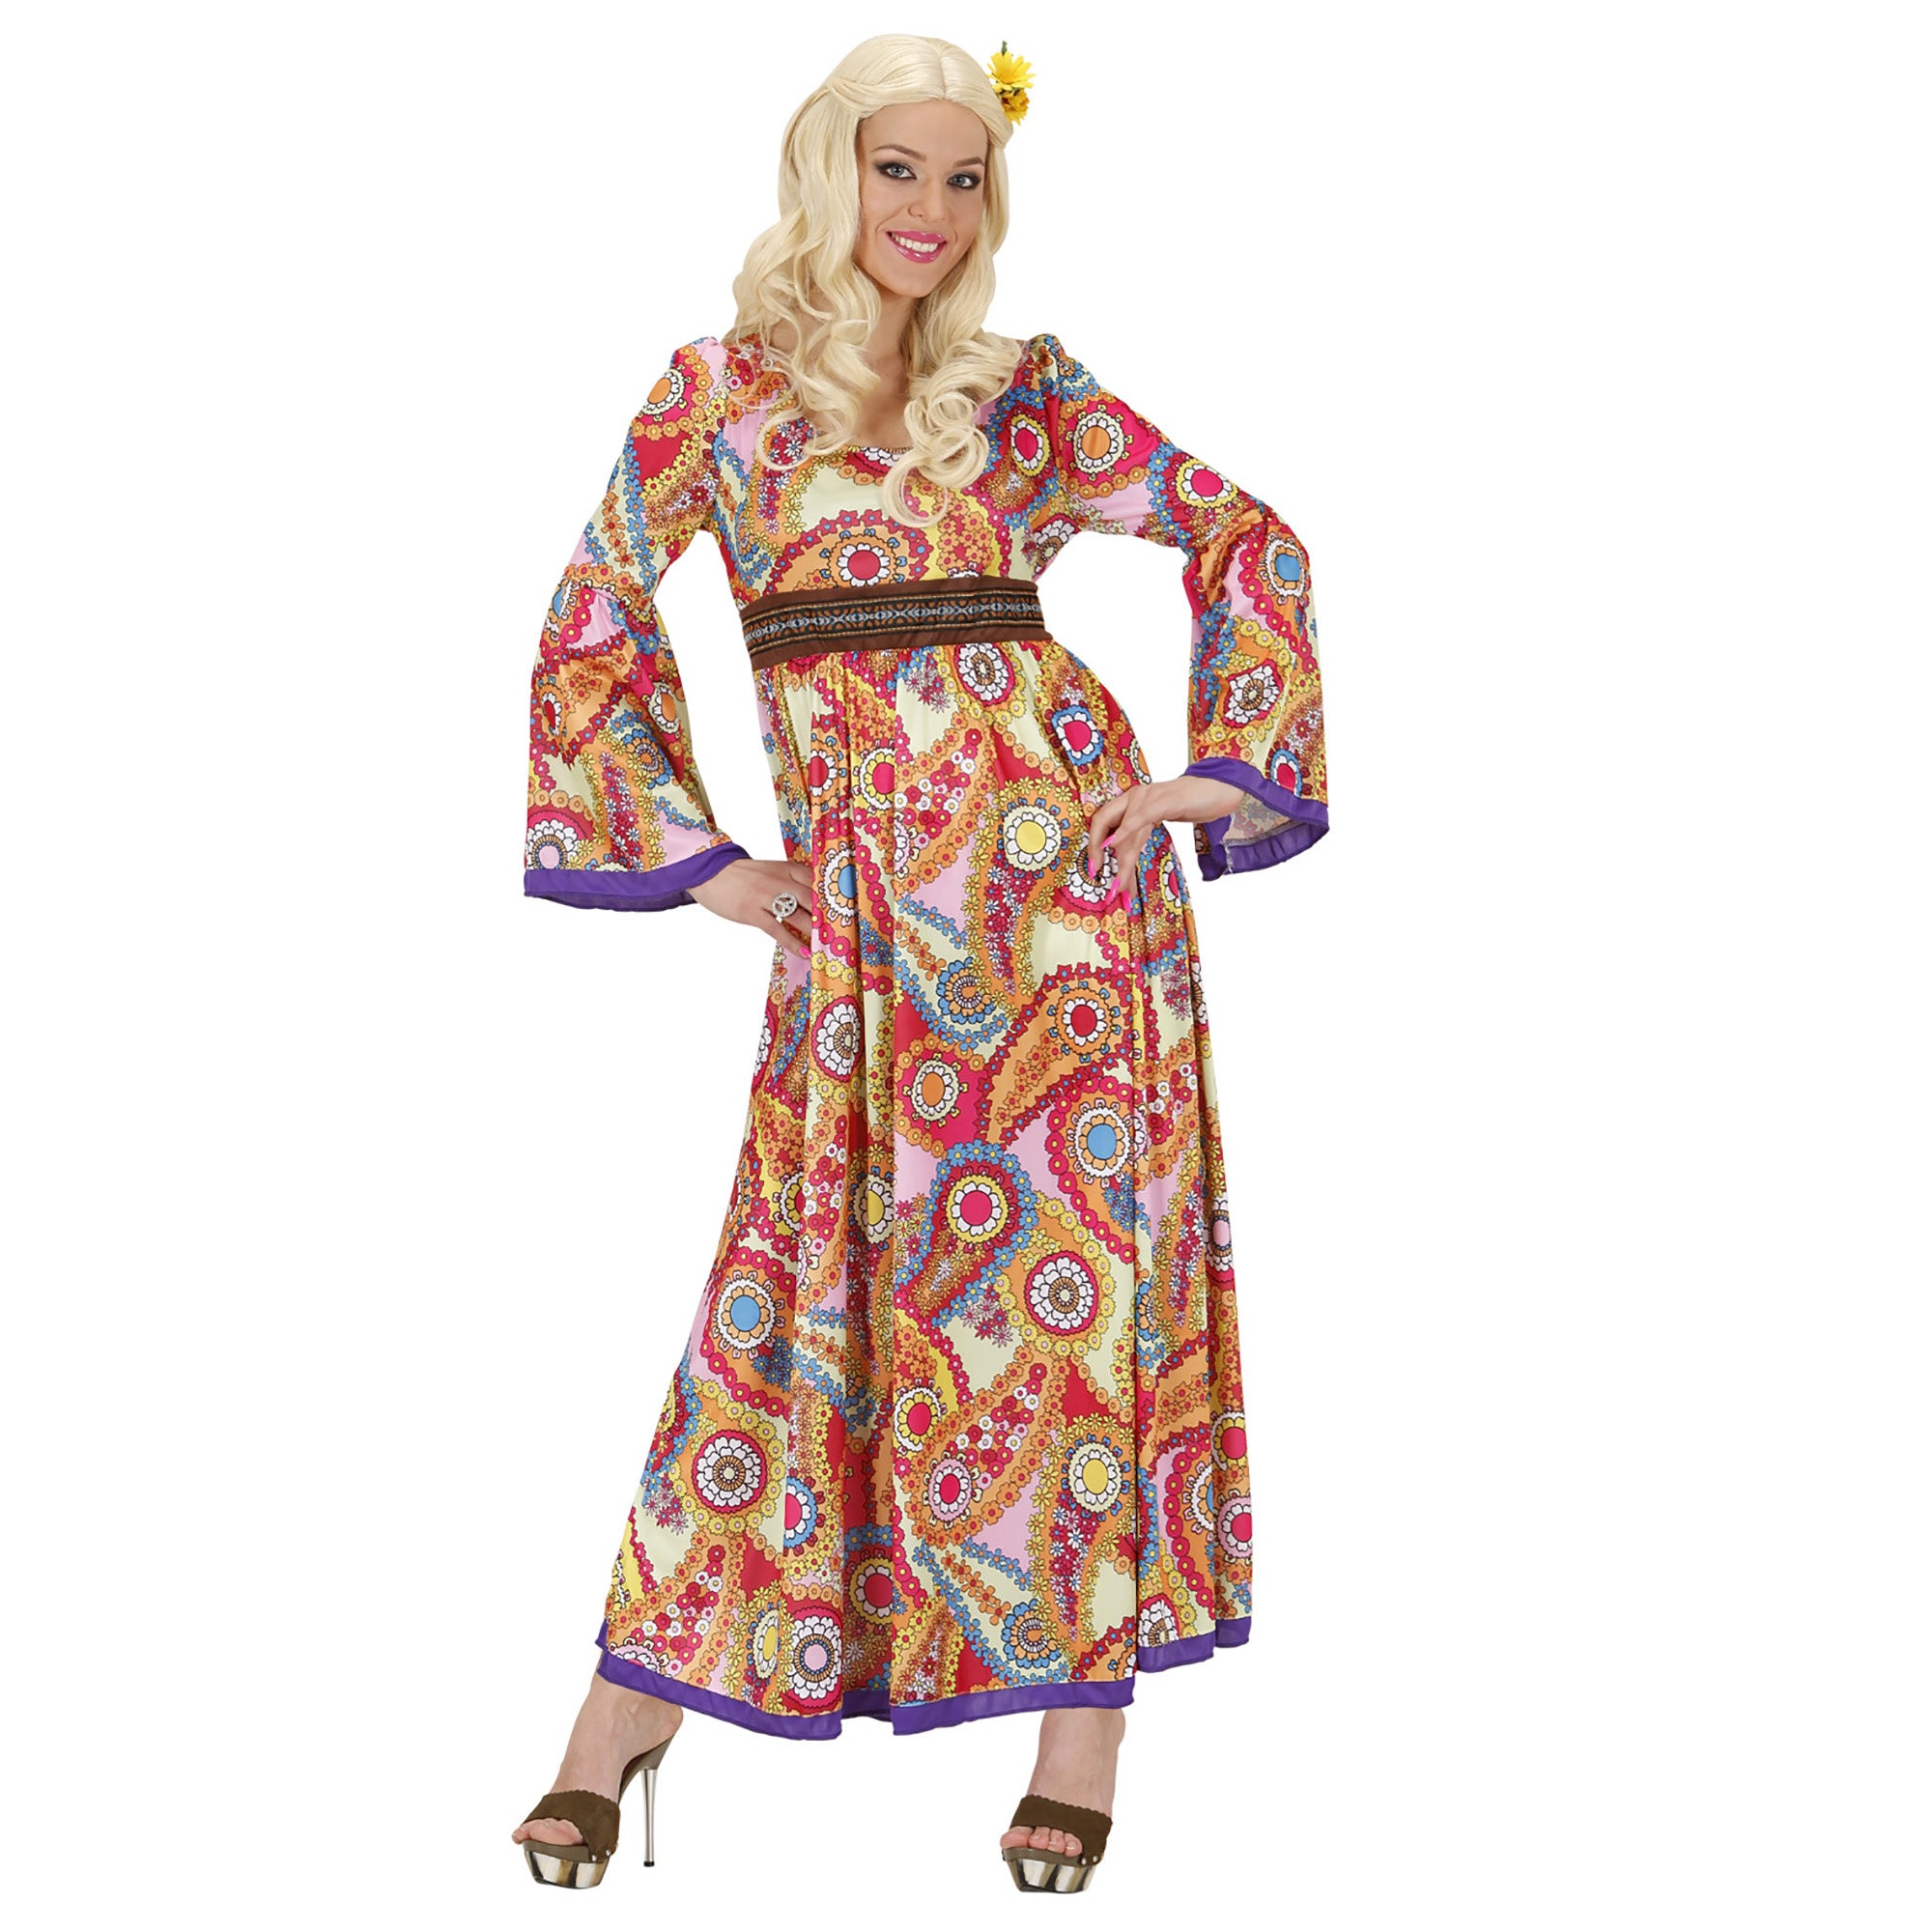 "Lang hippiekostuum voor vrouwen - Verkleedkleding - Small"